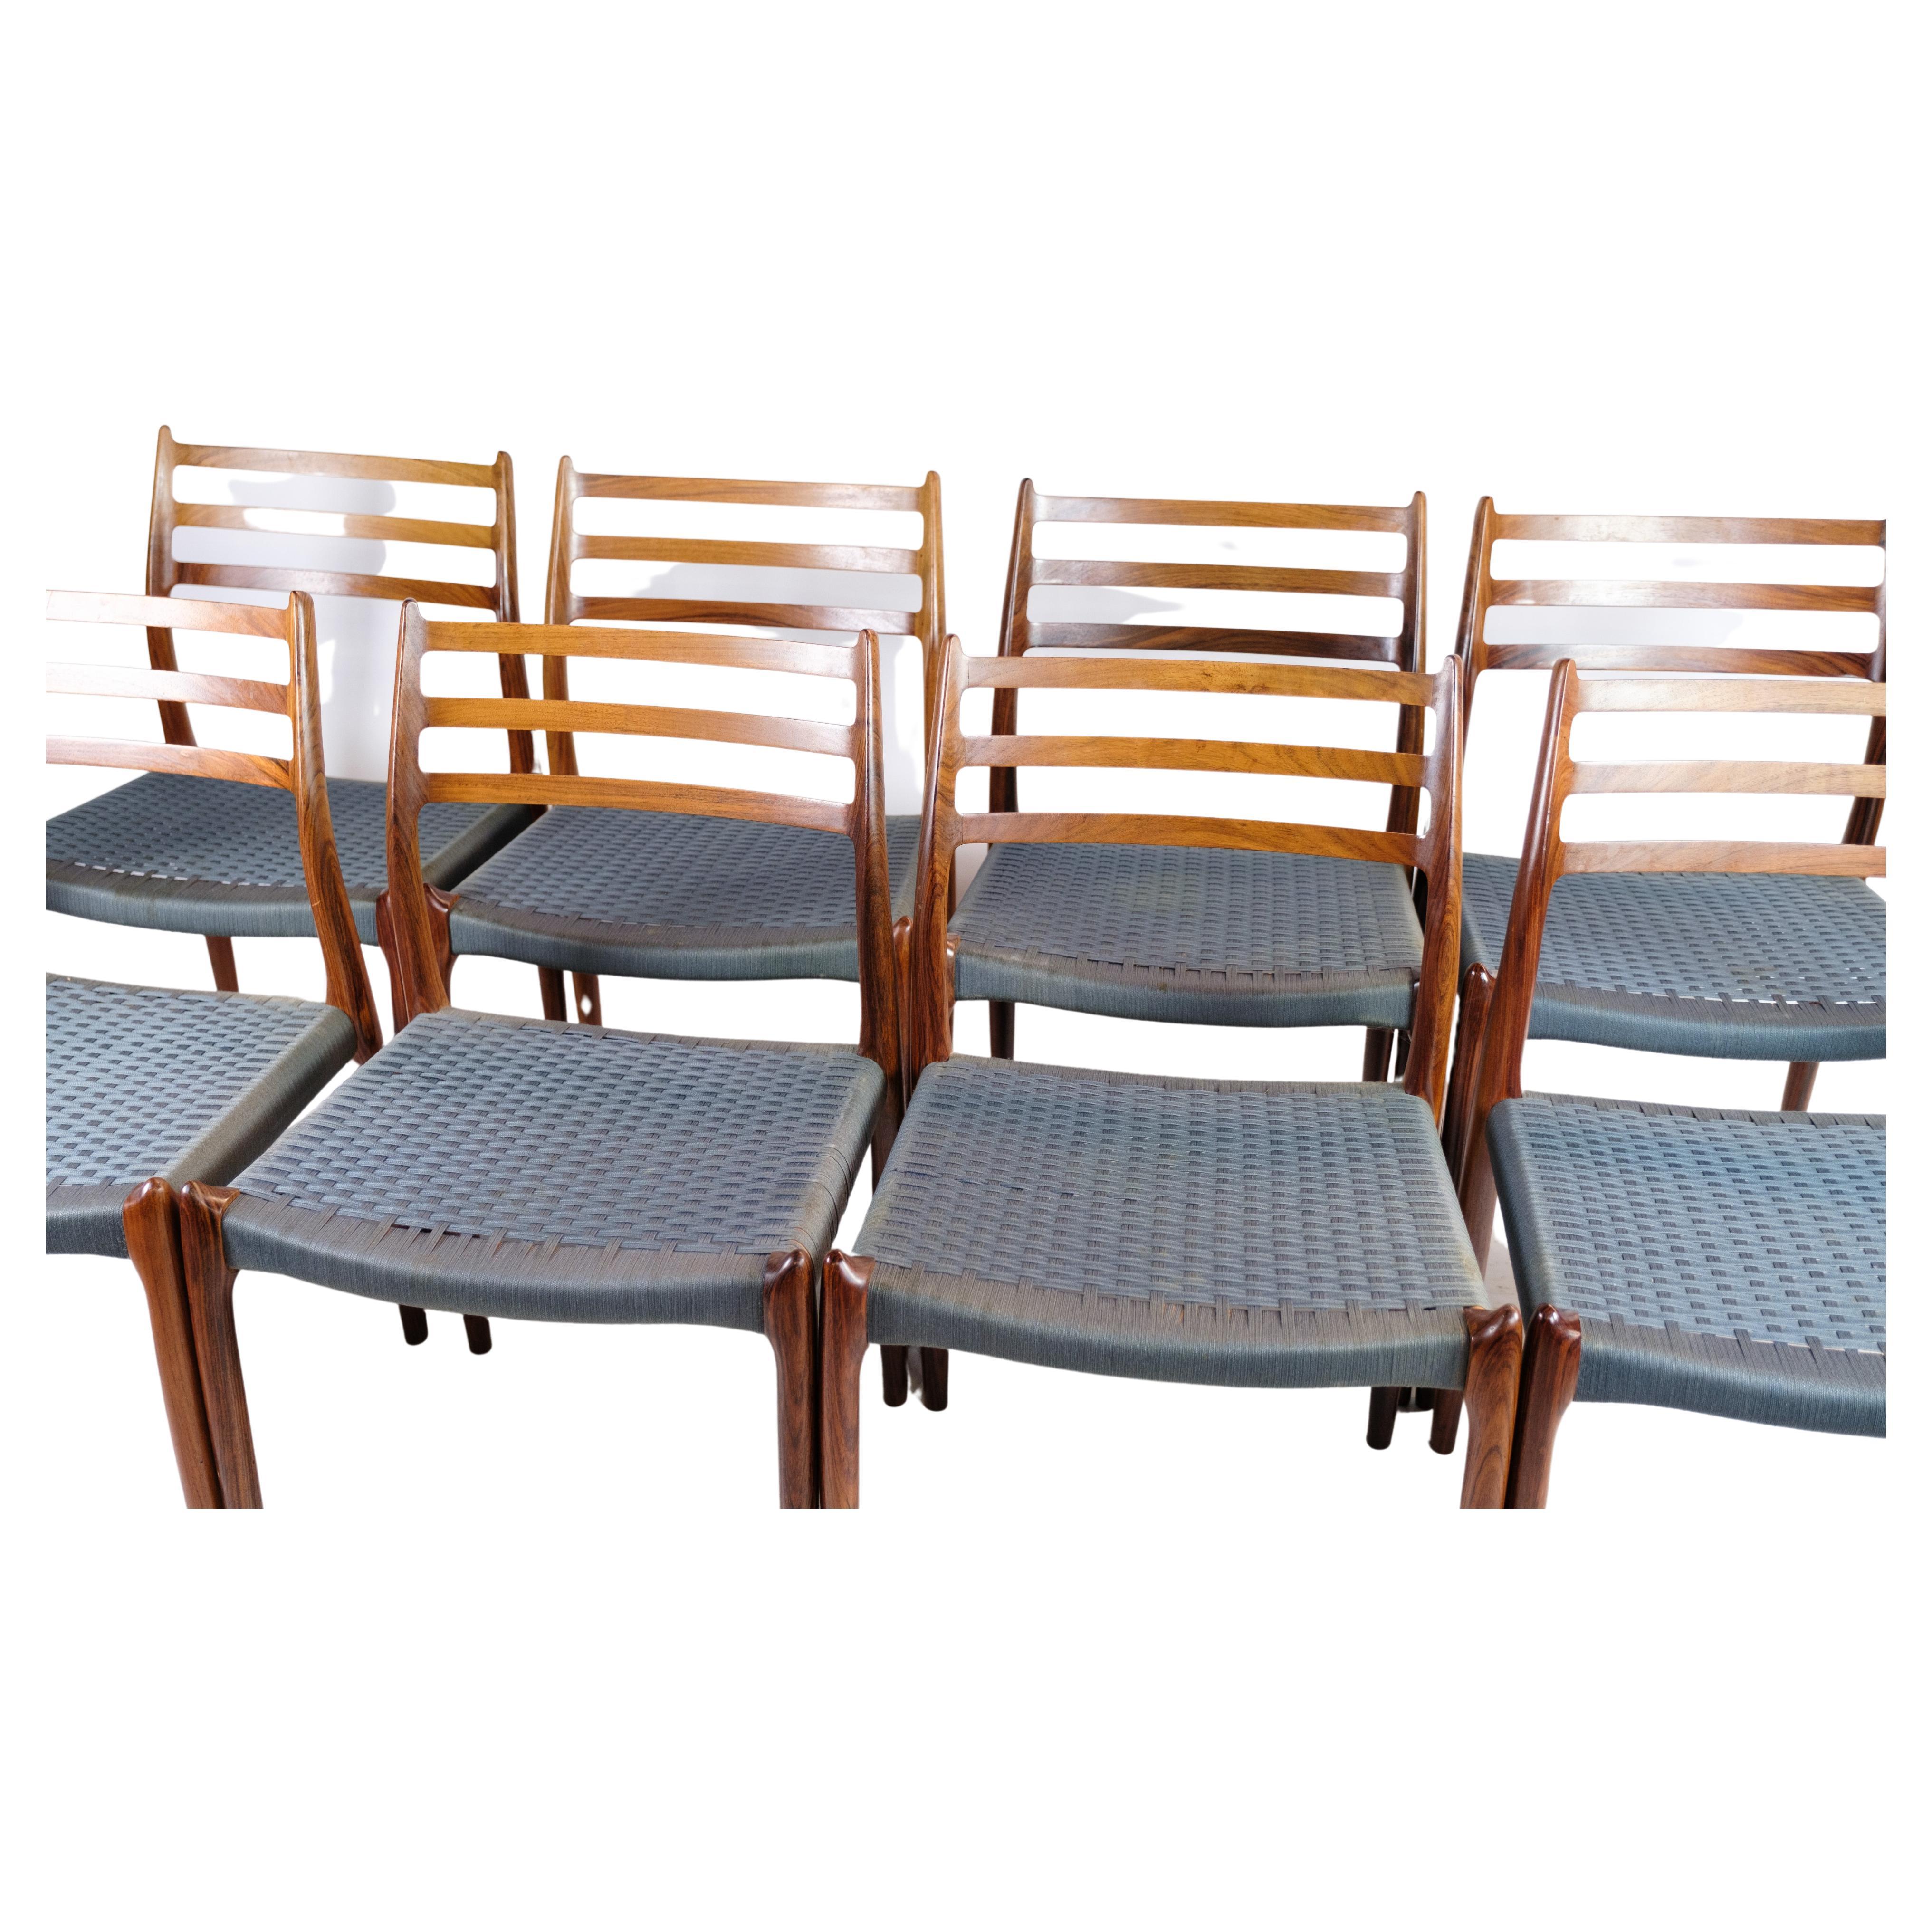 Un ensemble de huit chaises de salle à manger, modèle NO 78, méticuleusement conçu par le célèbre designer de meubles danois N.O. Møller et fabriqués de manière experte par I.L.A. Møller Møbelfabrik vers les années 1960. Ces chaises exquises sont